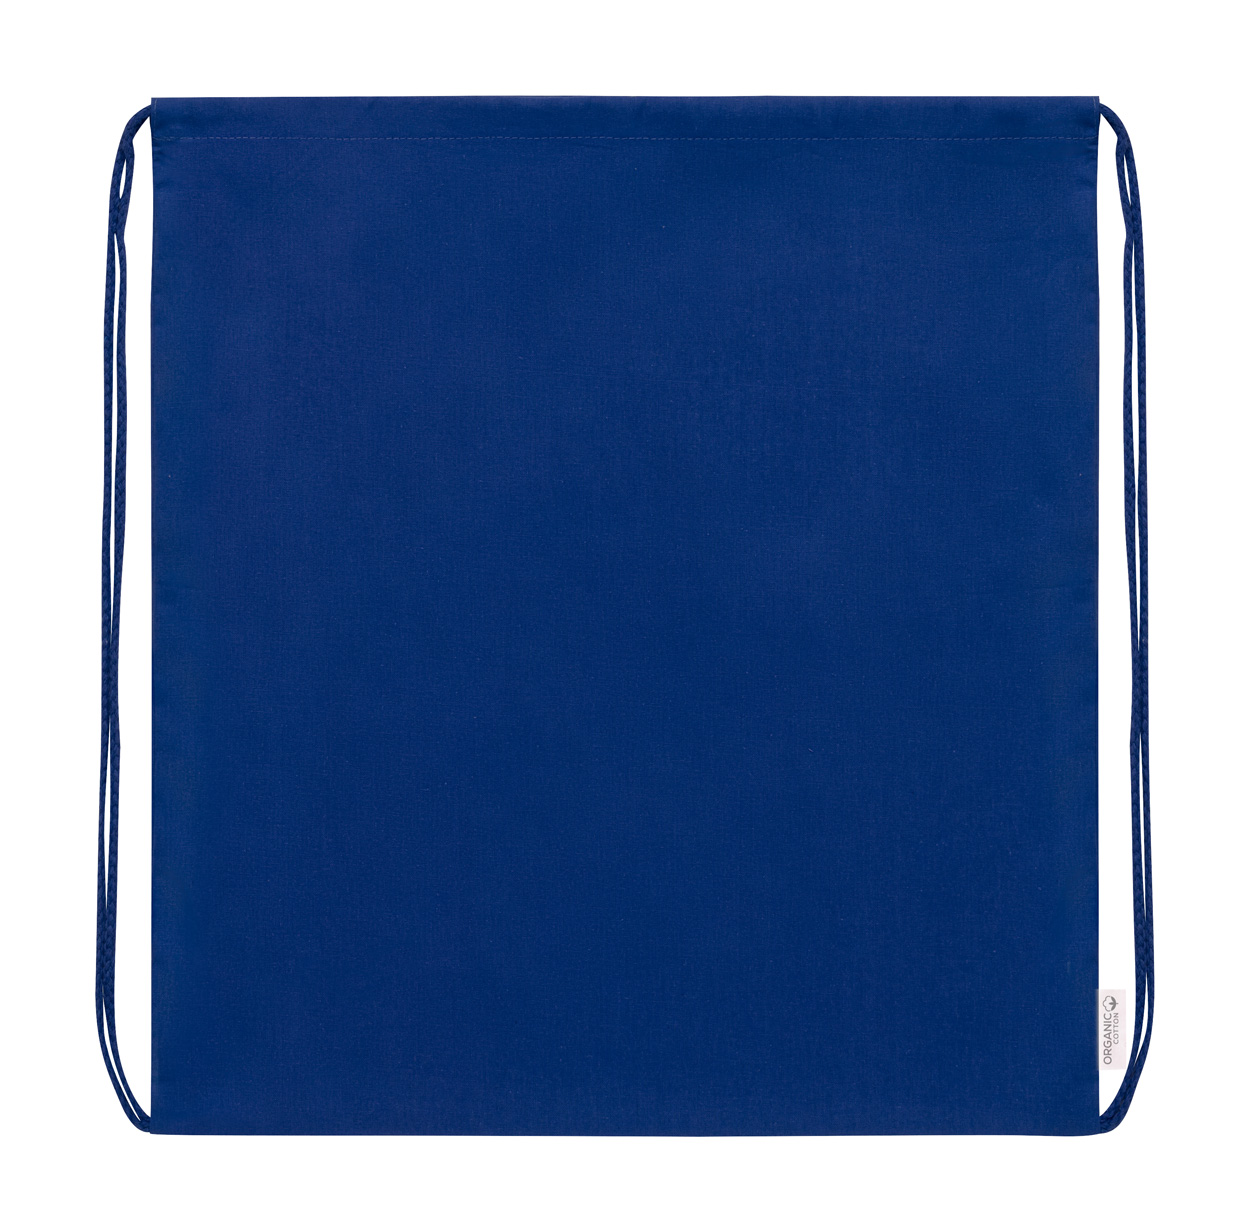 Maziu drawstring bag - blue